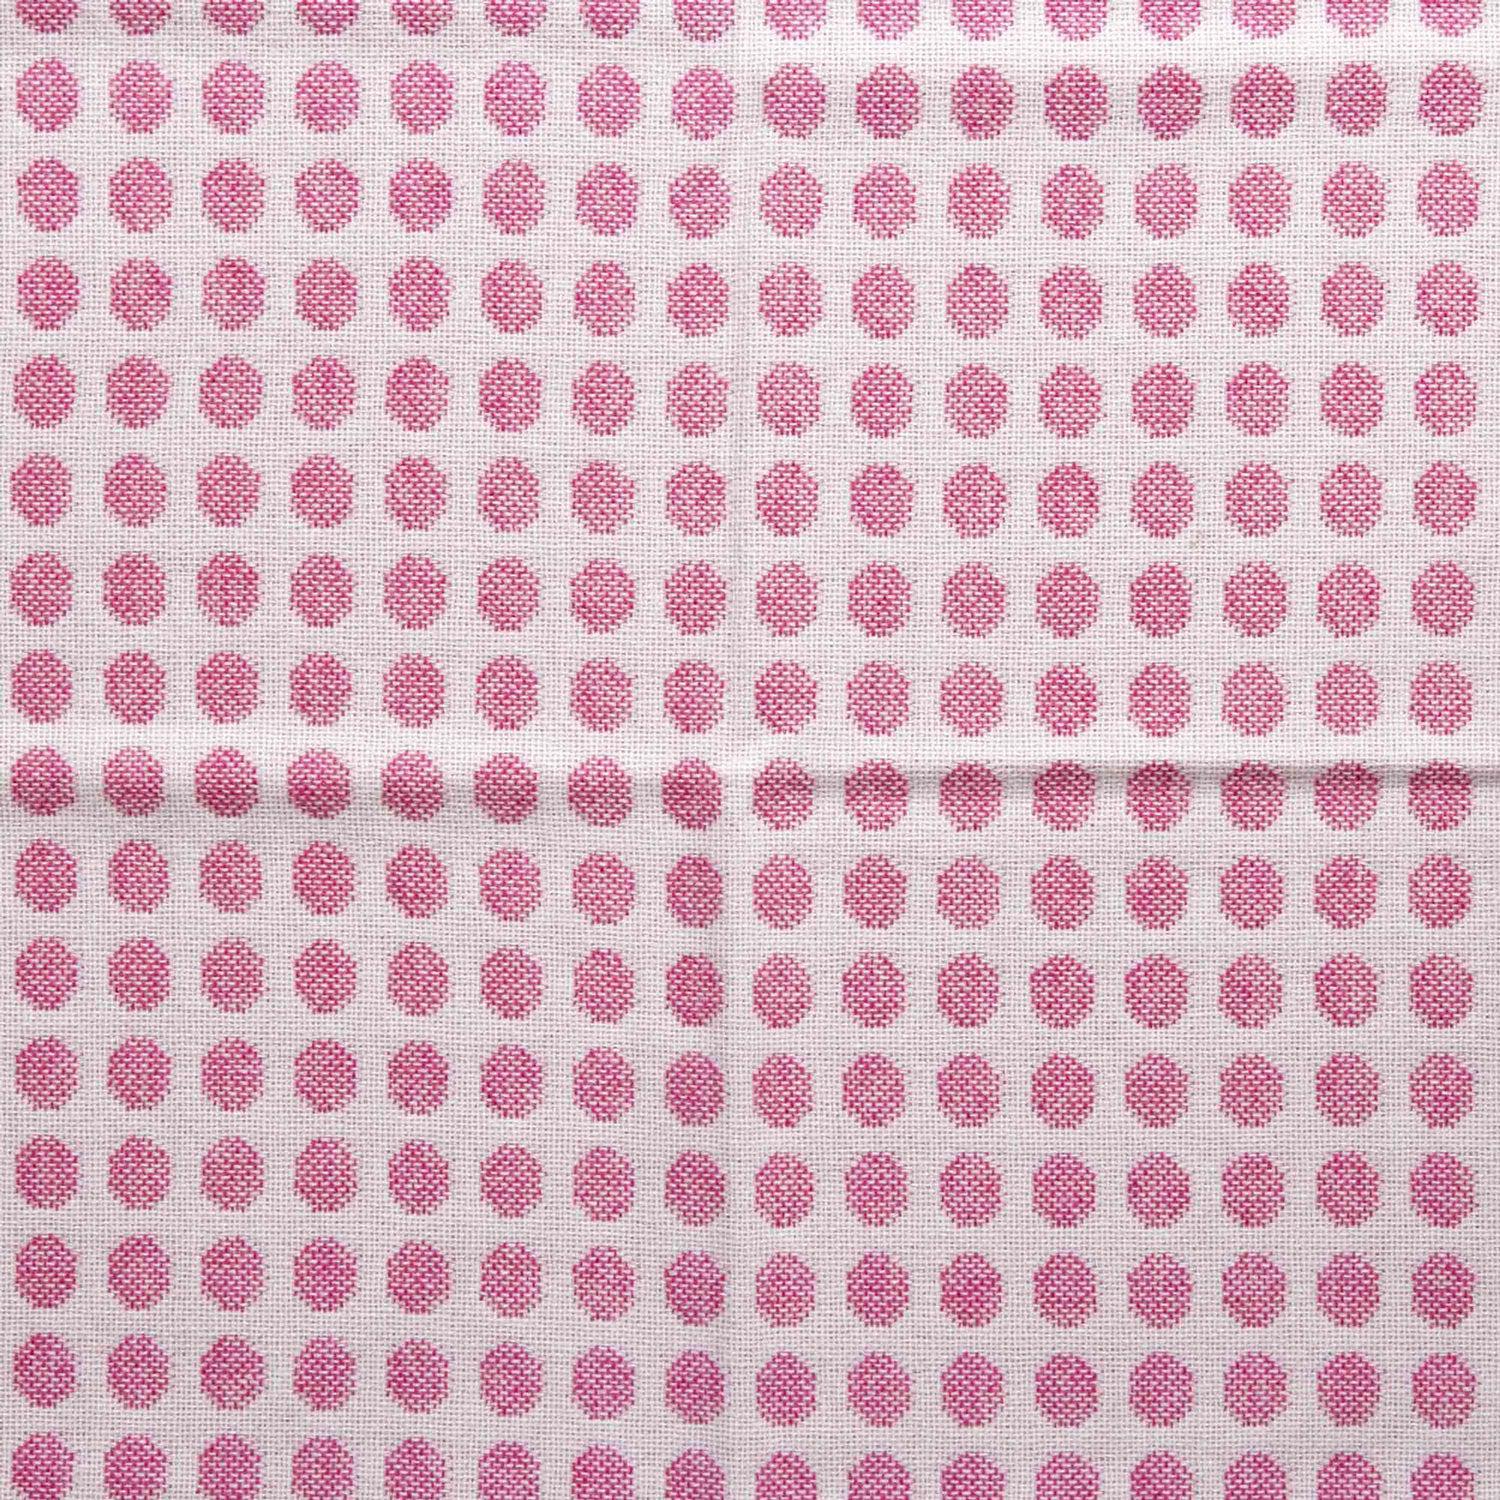 Pram Blanket - Melin Tregwynt - Mondo Spotty - Baby Pink - Blossom